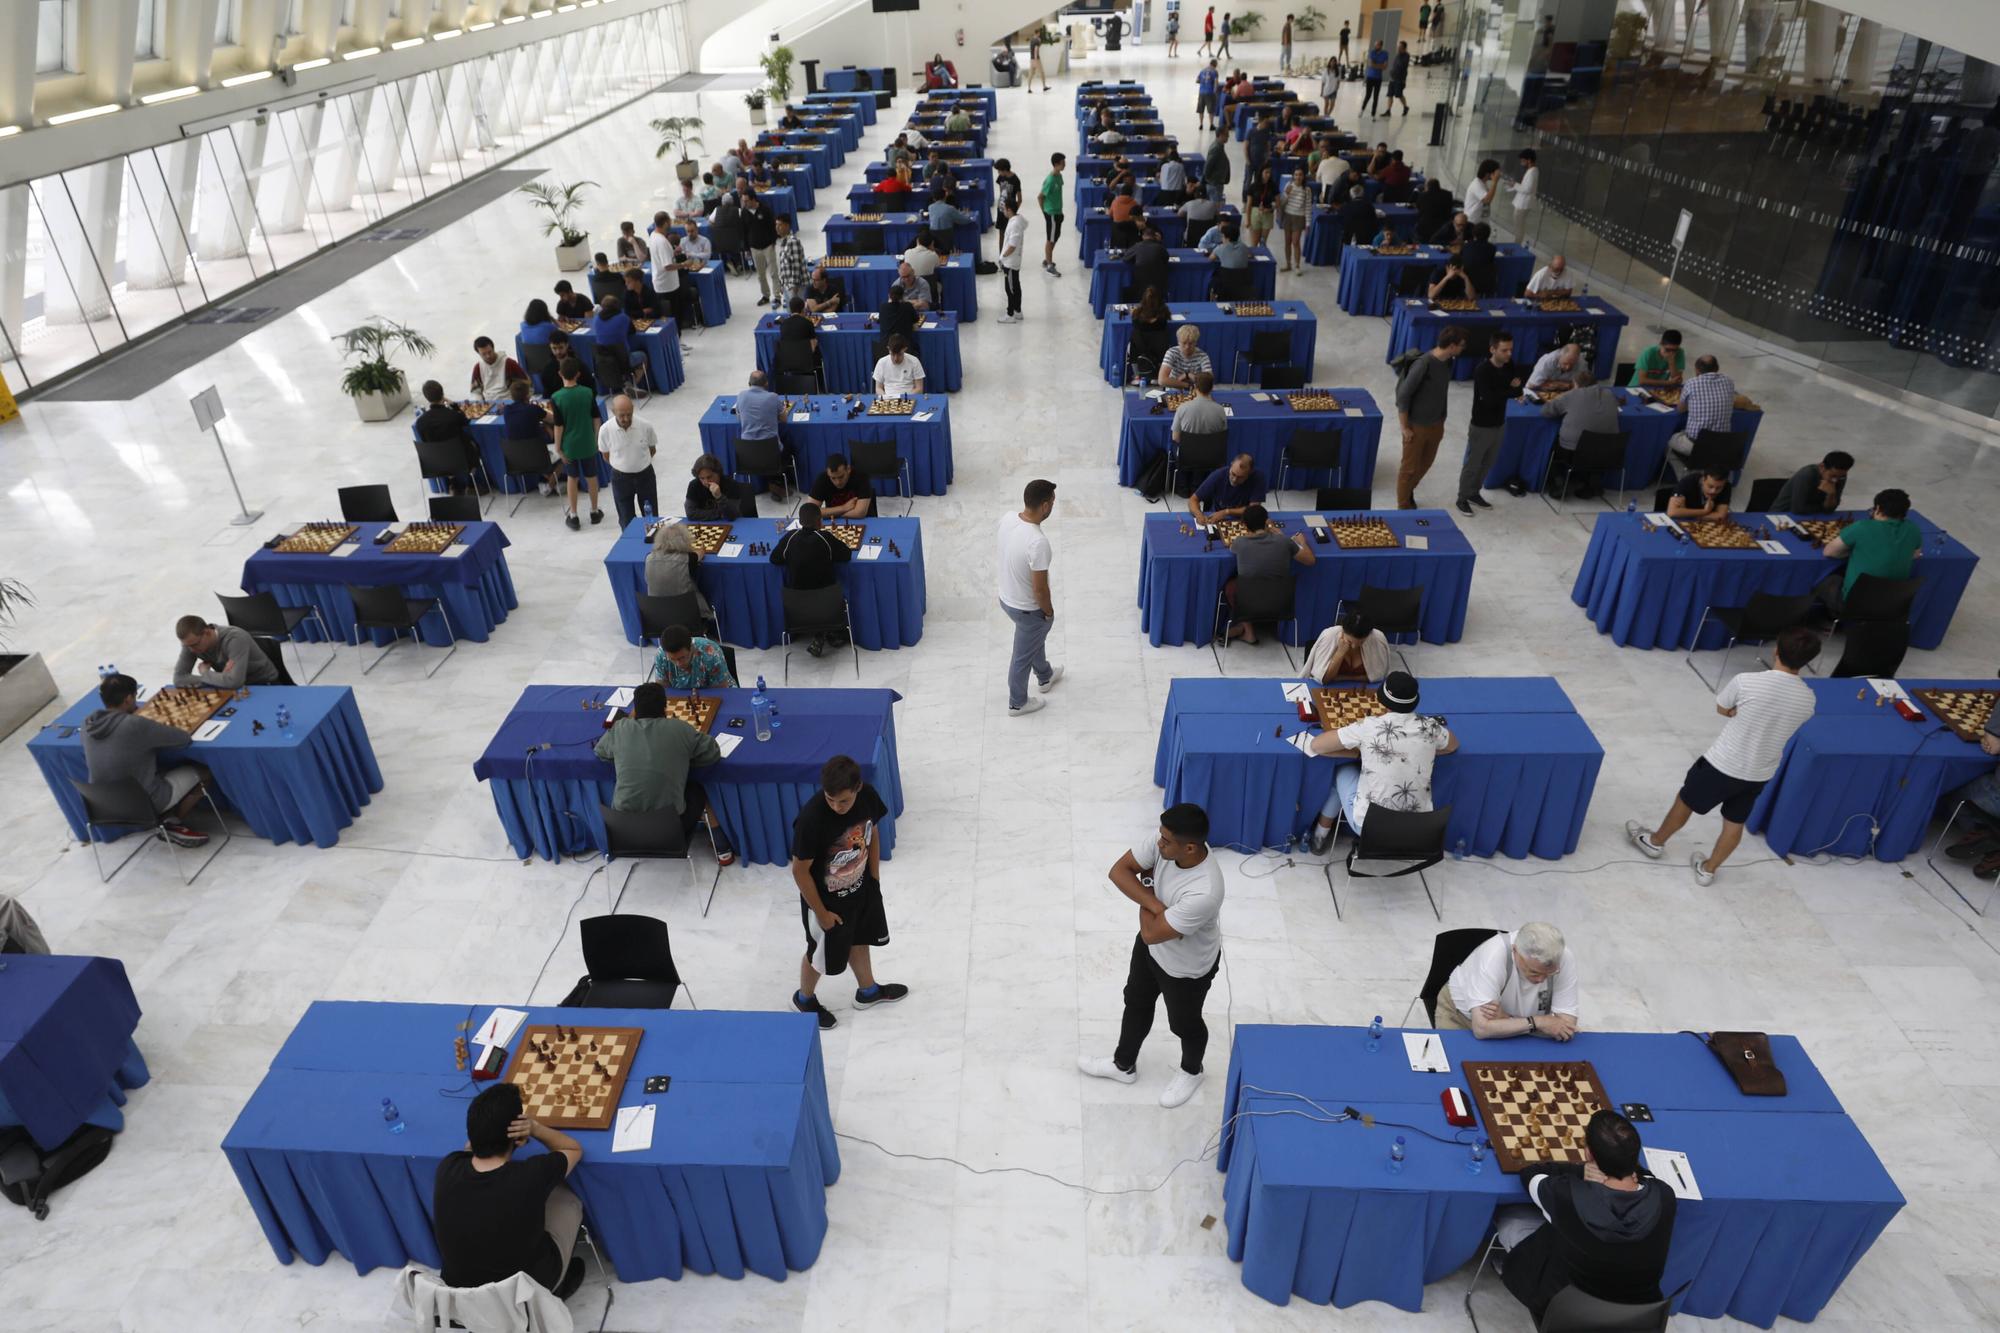 En imágenes: IX Open "Ciudad de Oviedo" de ajedrez